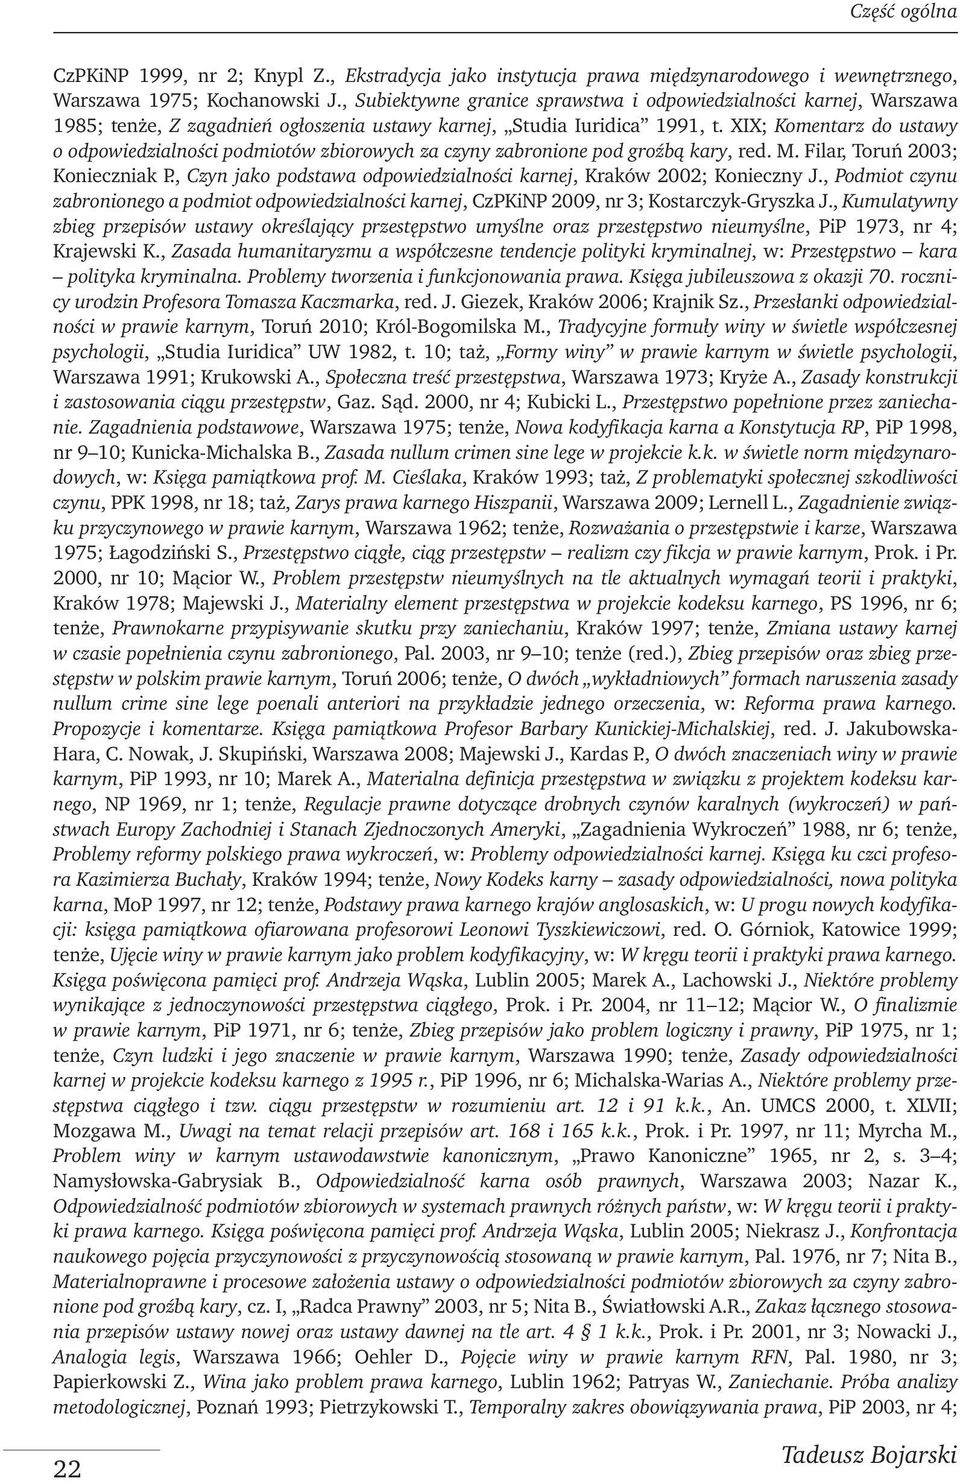 XIX; Komentarz do ustawy o odpowiedzialności podmiotów zbiorowych za czyny zabronione pod groźbą kary, red. M. Filar, Toruń 2003; Konieczniak P.